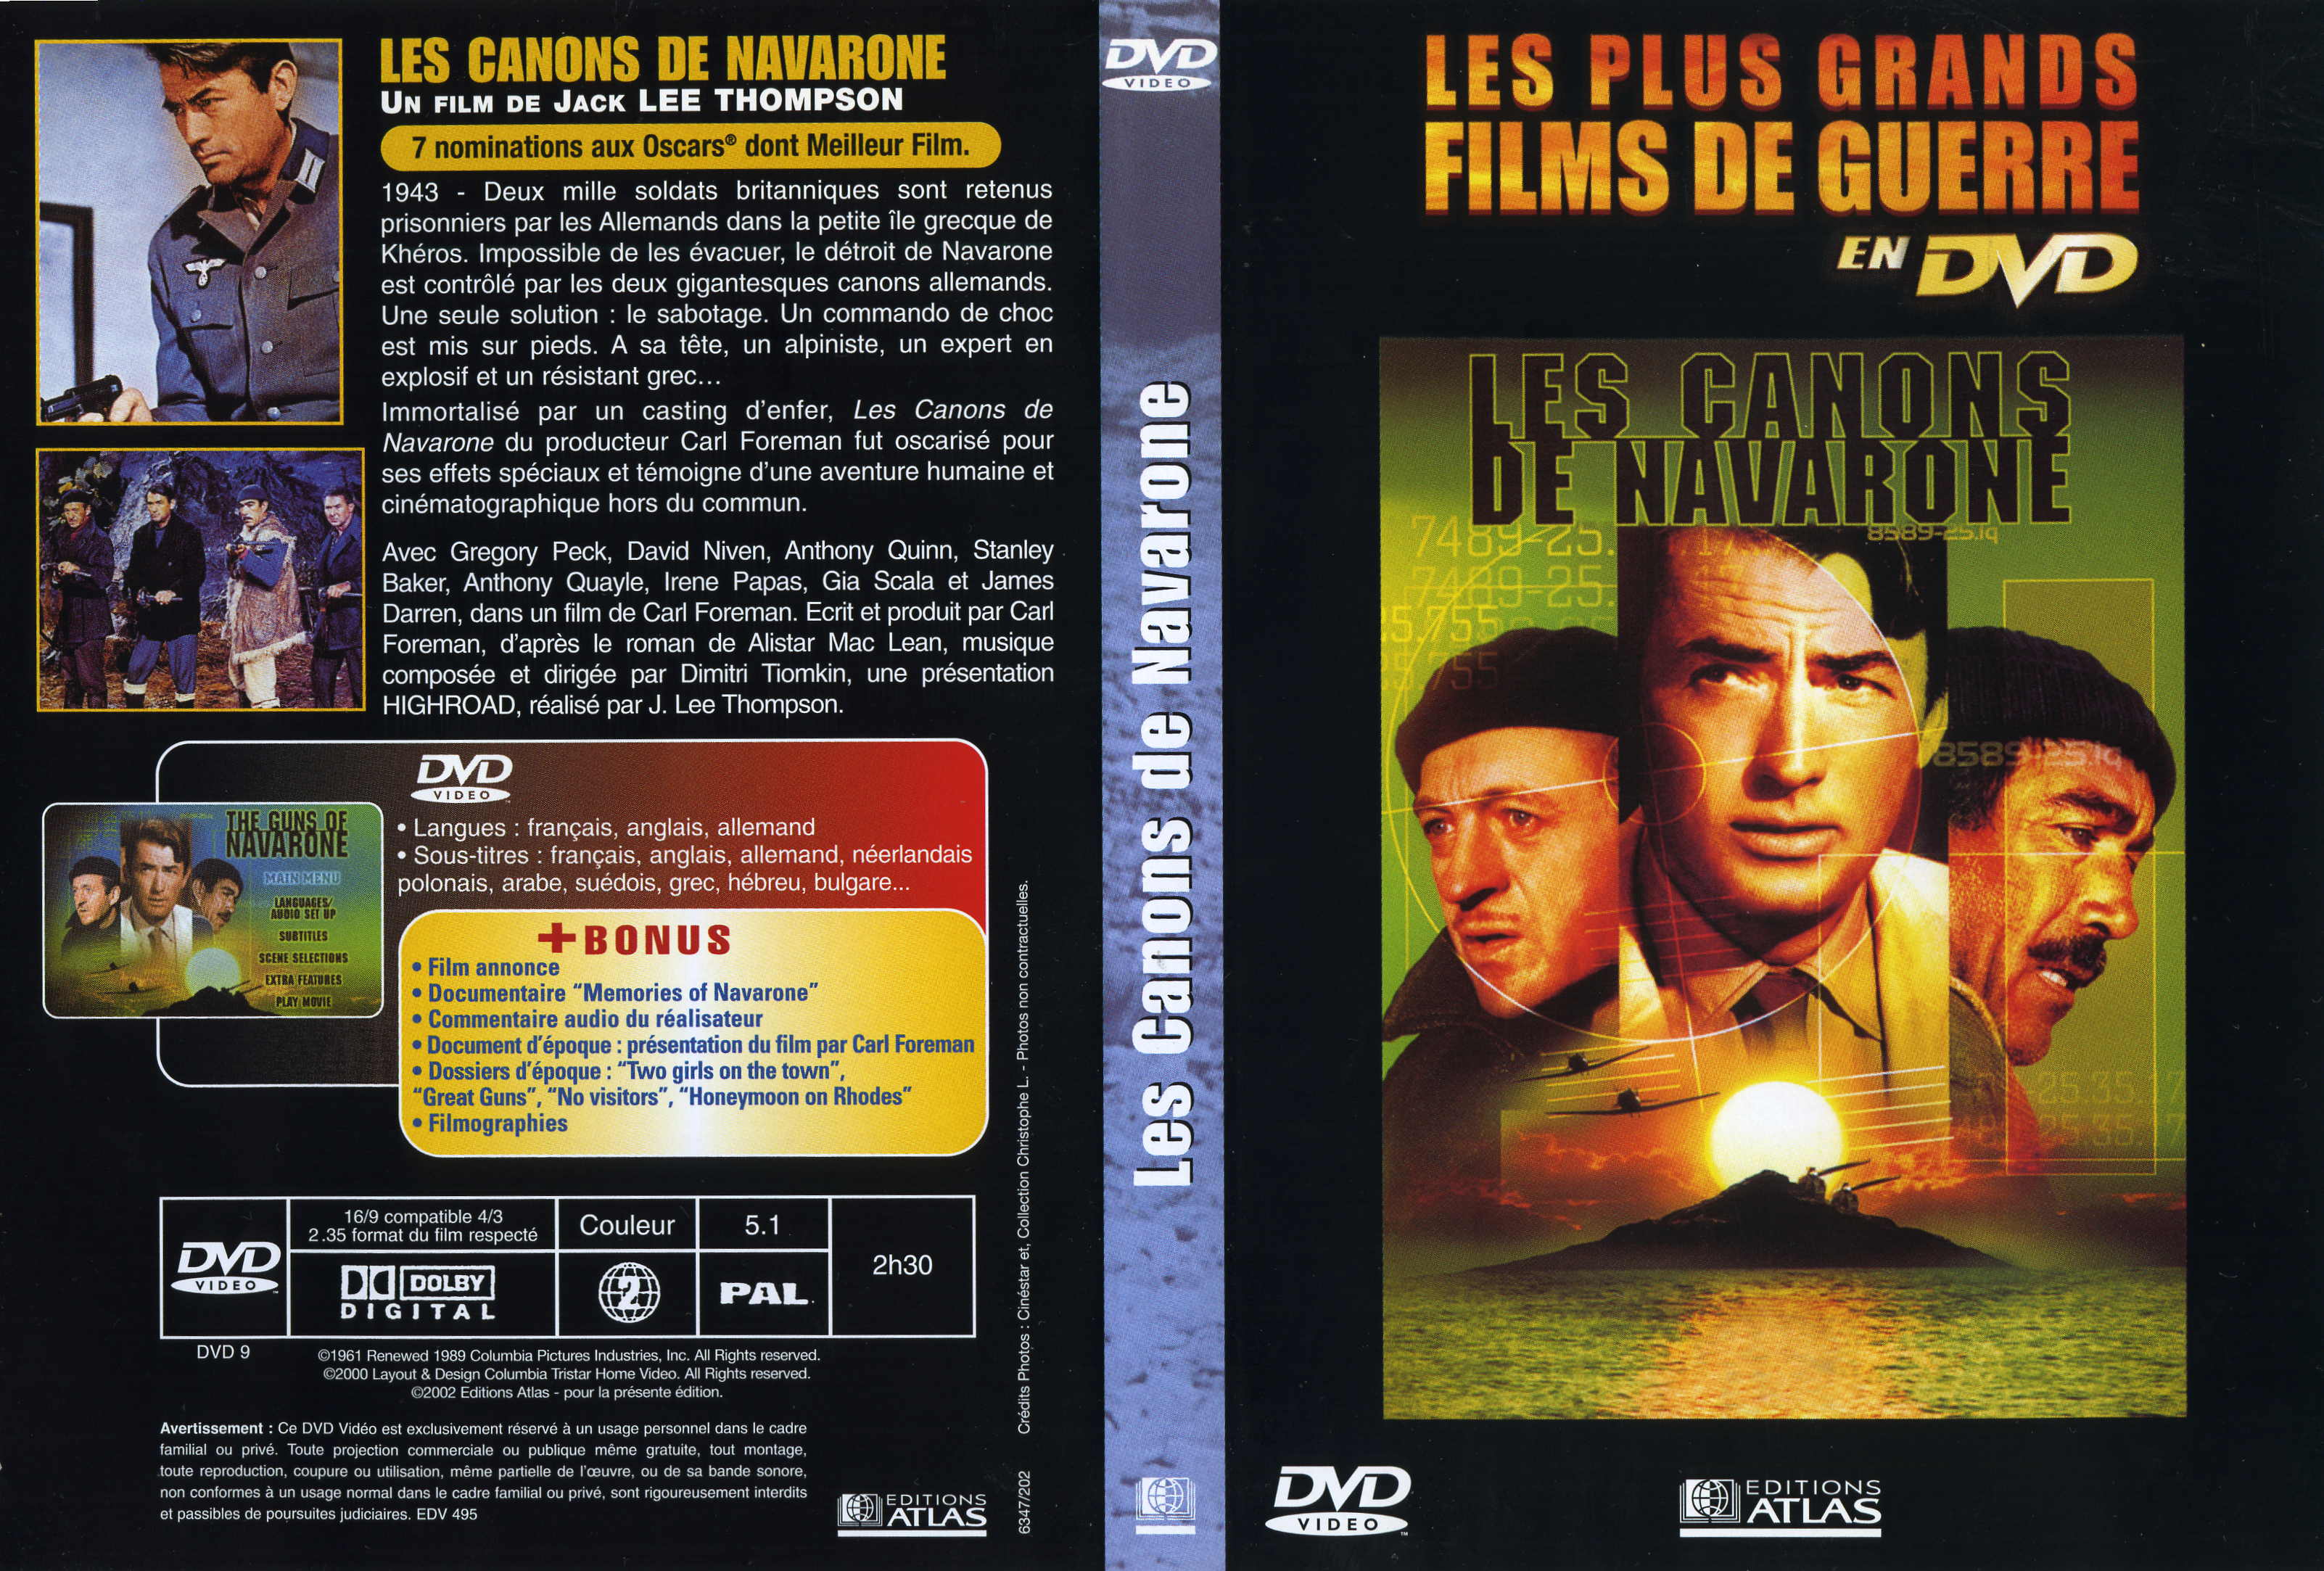 Jaquette DVD Les canons de Navarone v2